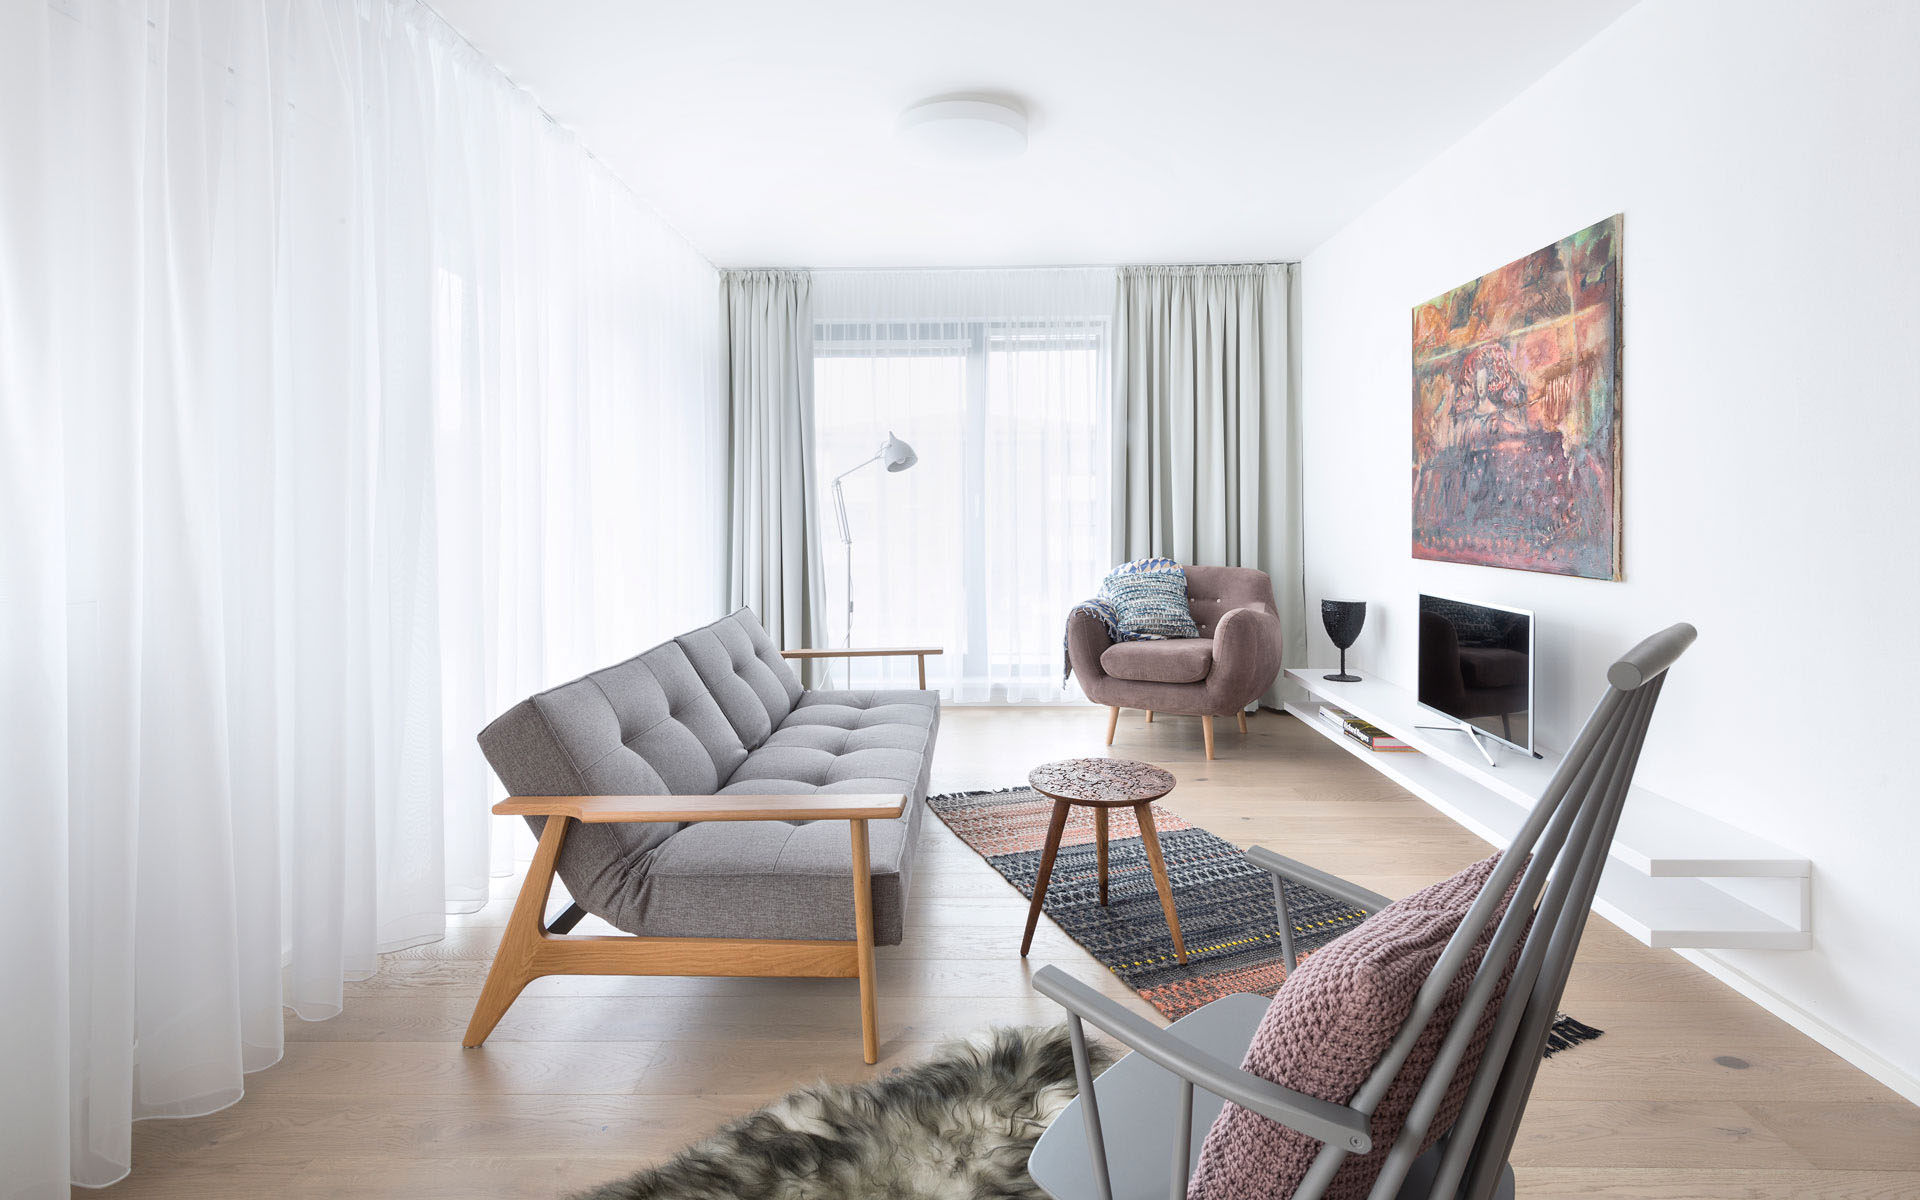 Svetlá obývacia izba, škandinávsky štýl, dizajnová sedacia súprava, interiér